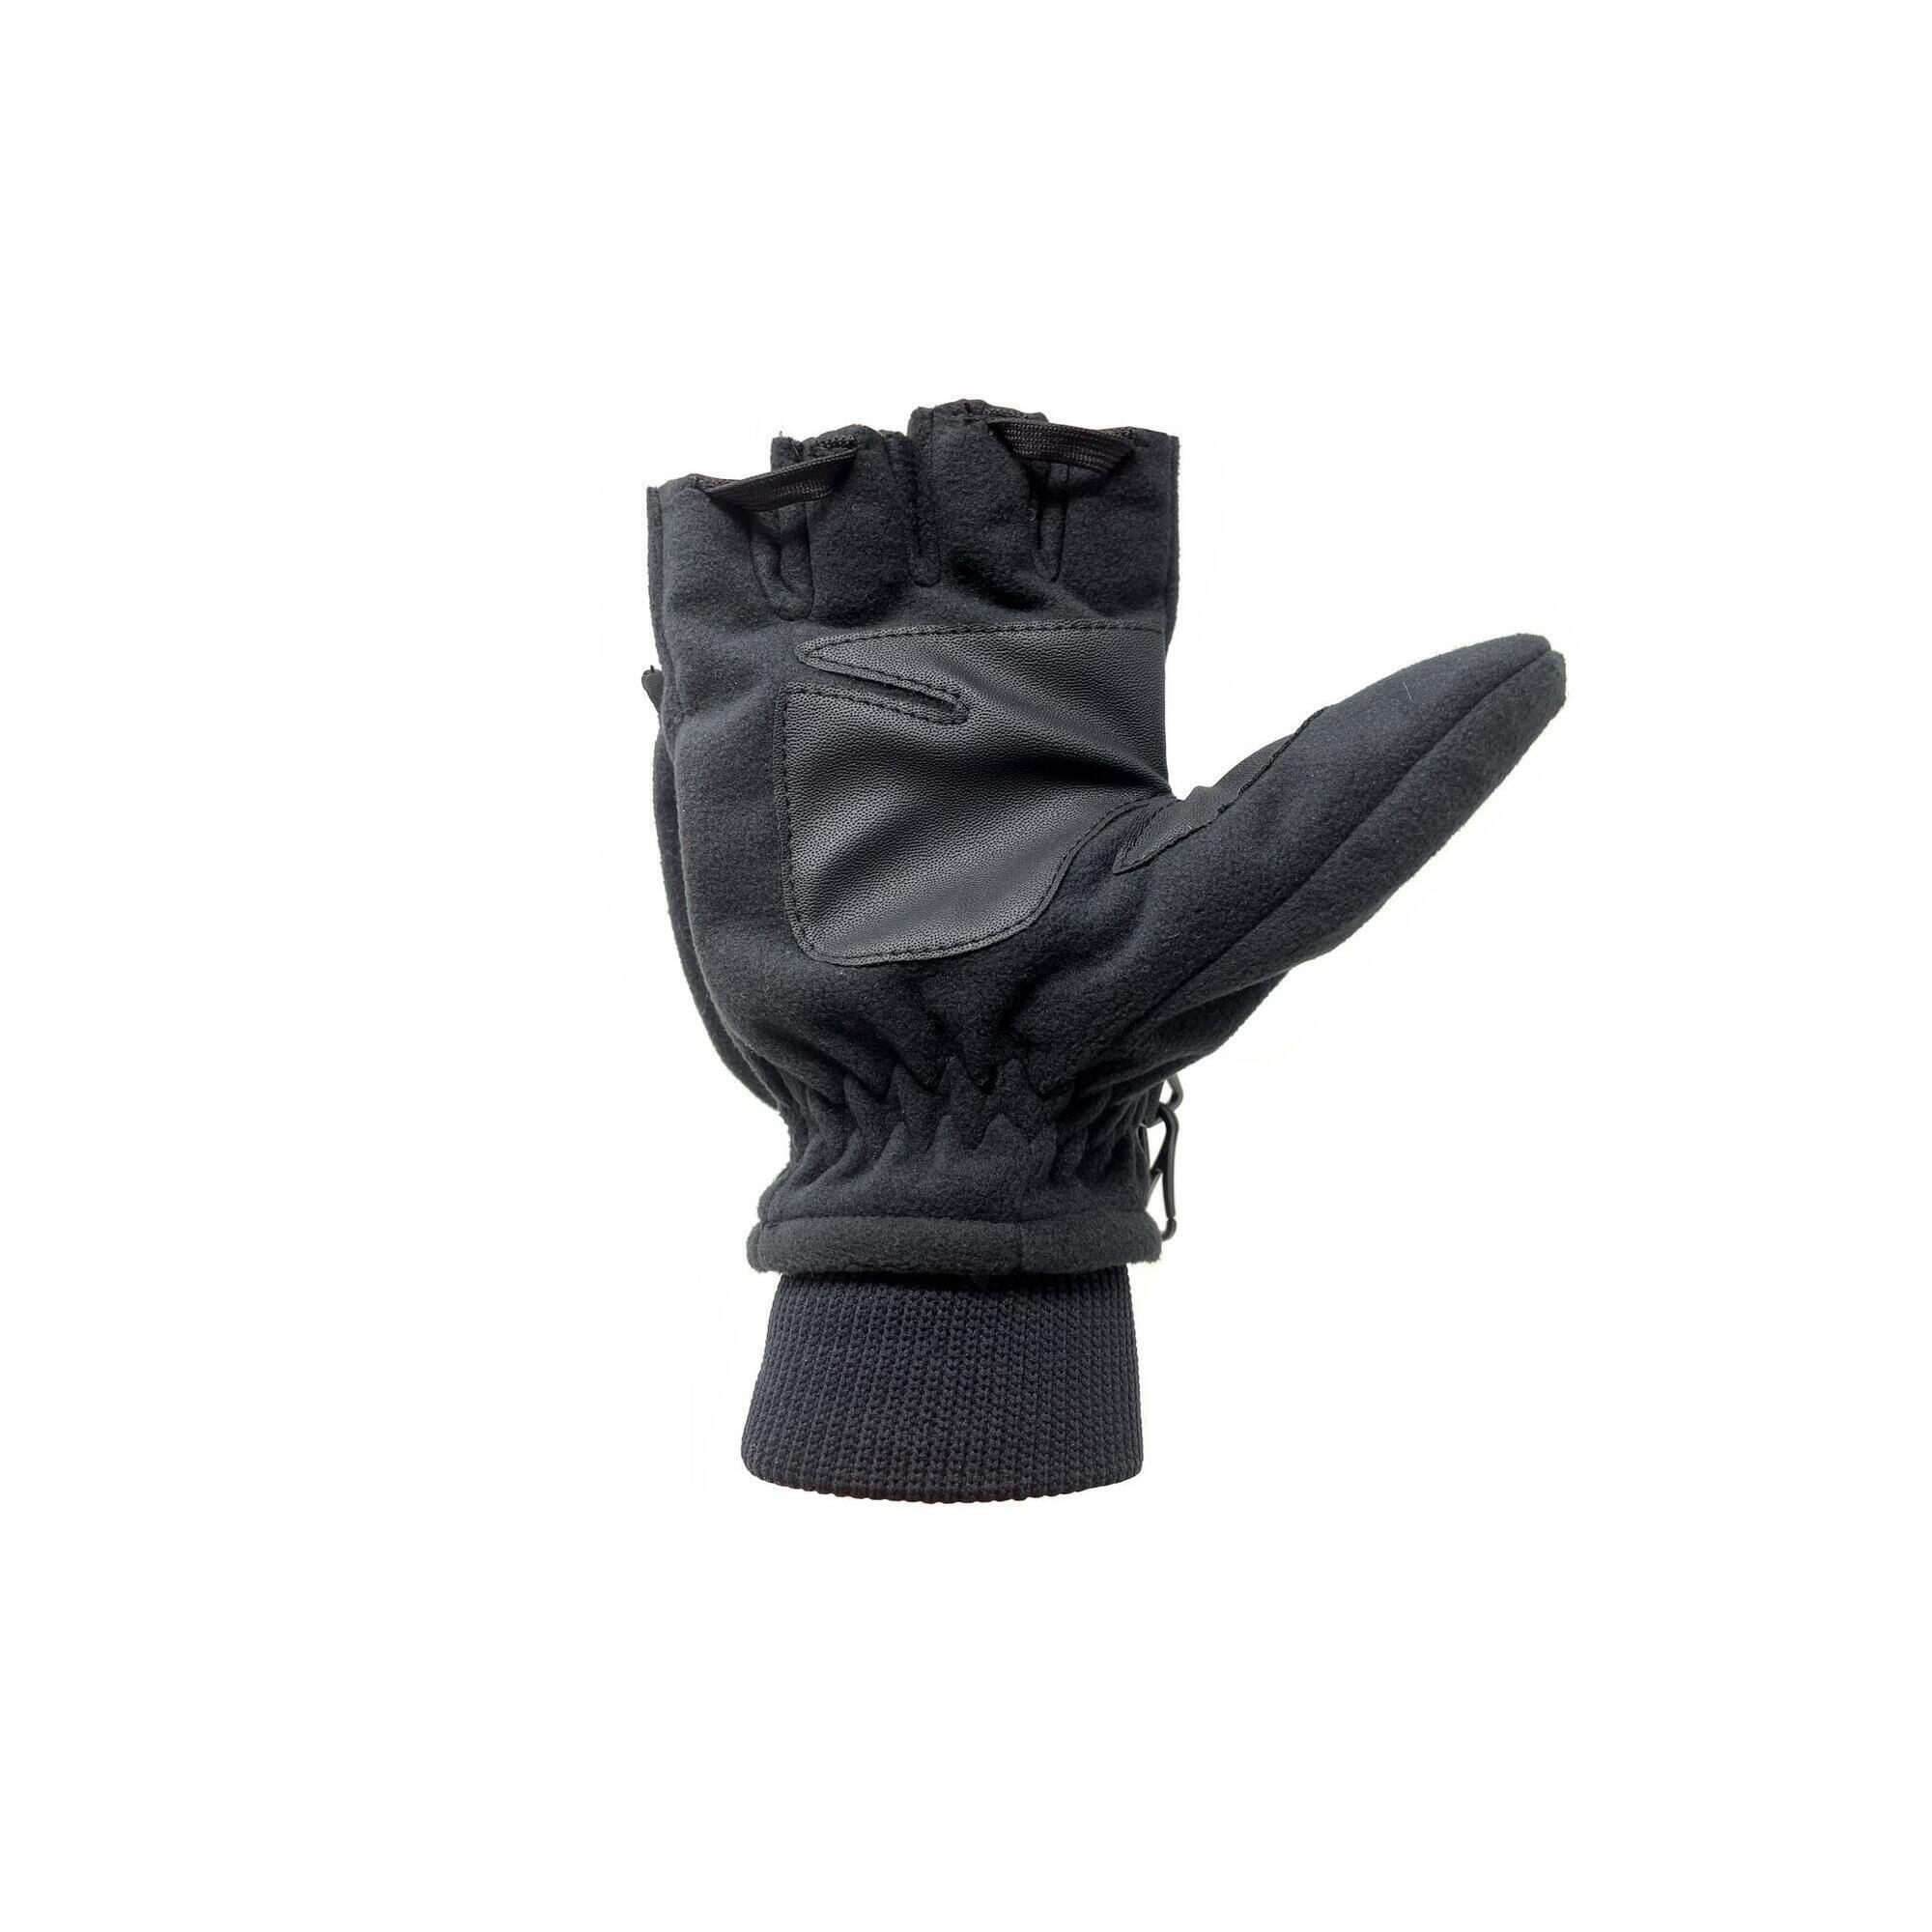  NBG-02 ski gloves 4/5